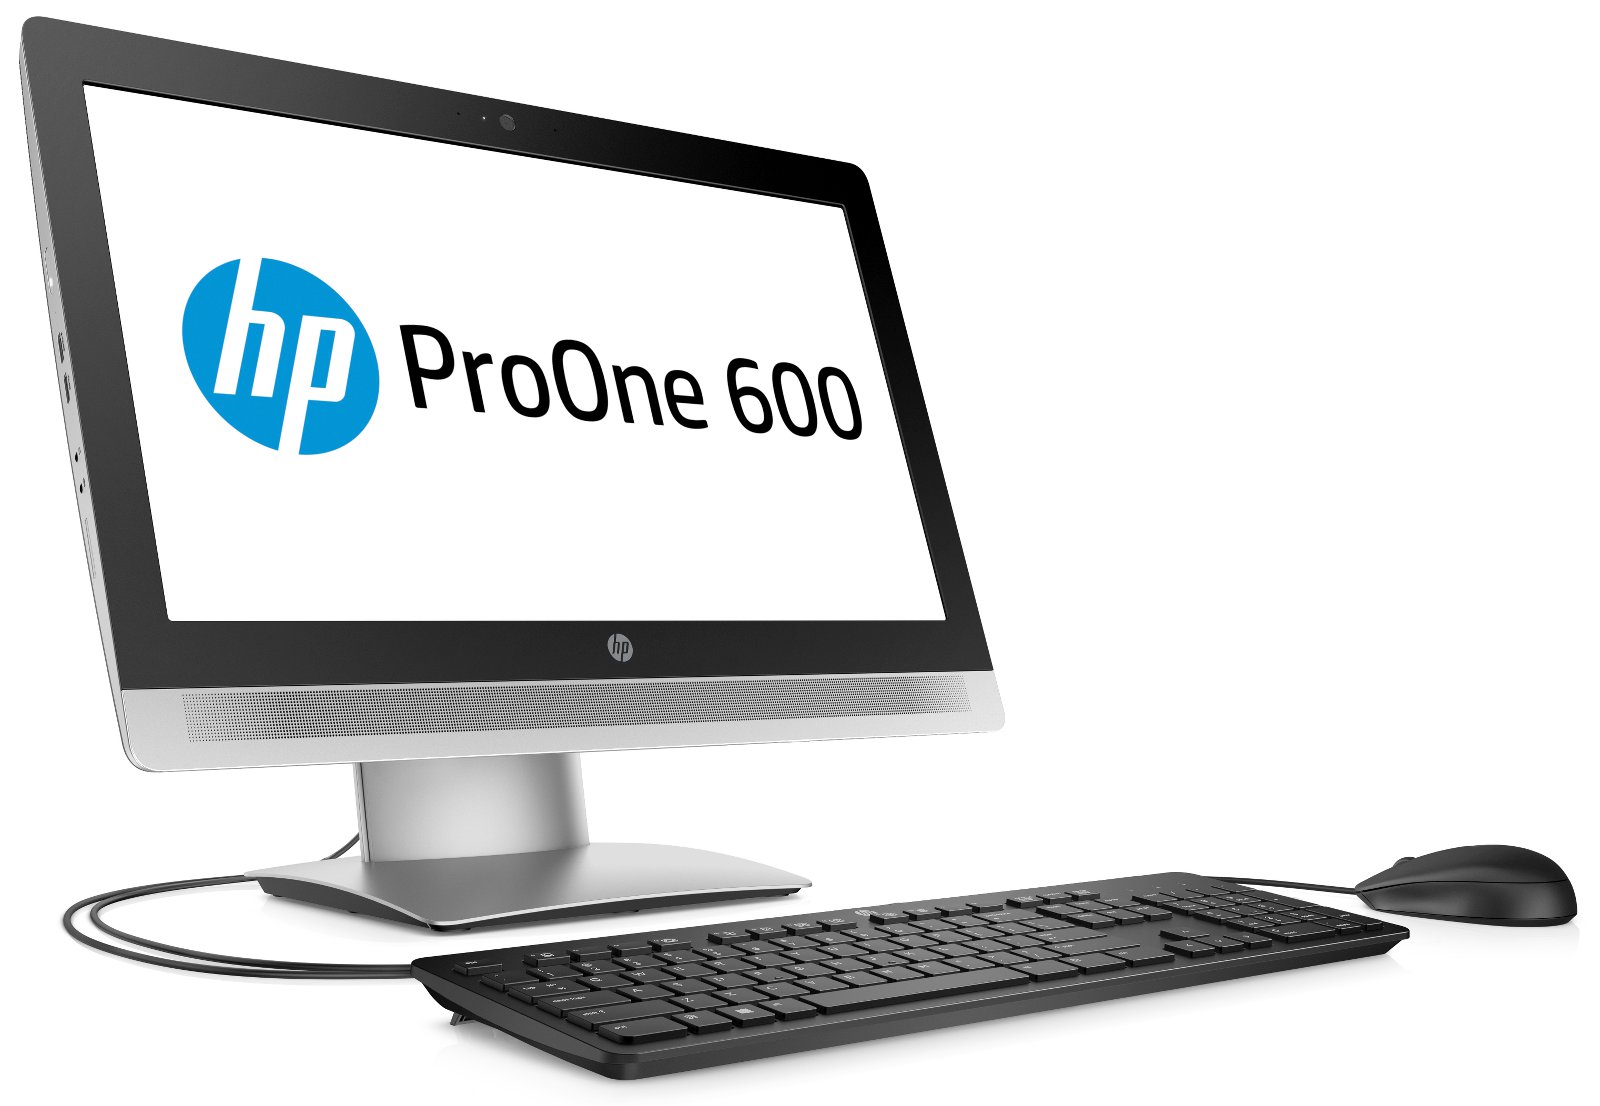 HP ProOne 600 otrzymał procesor z rodziny Intel Core, którym jest model i5-8500T, a więc model posiadający aż sześć rdzeni